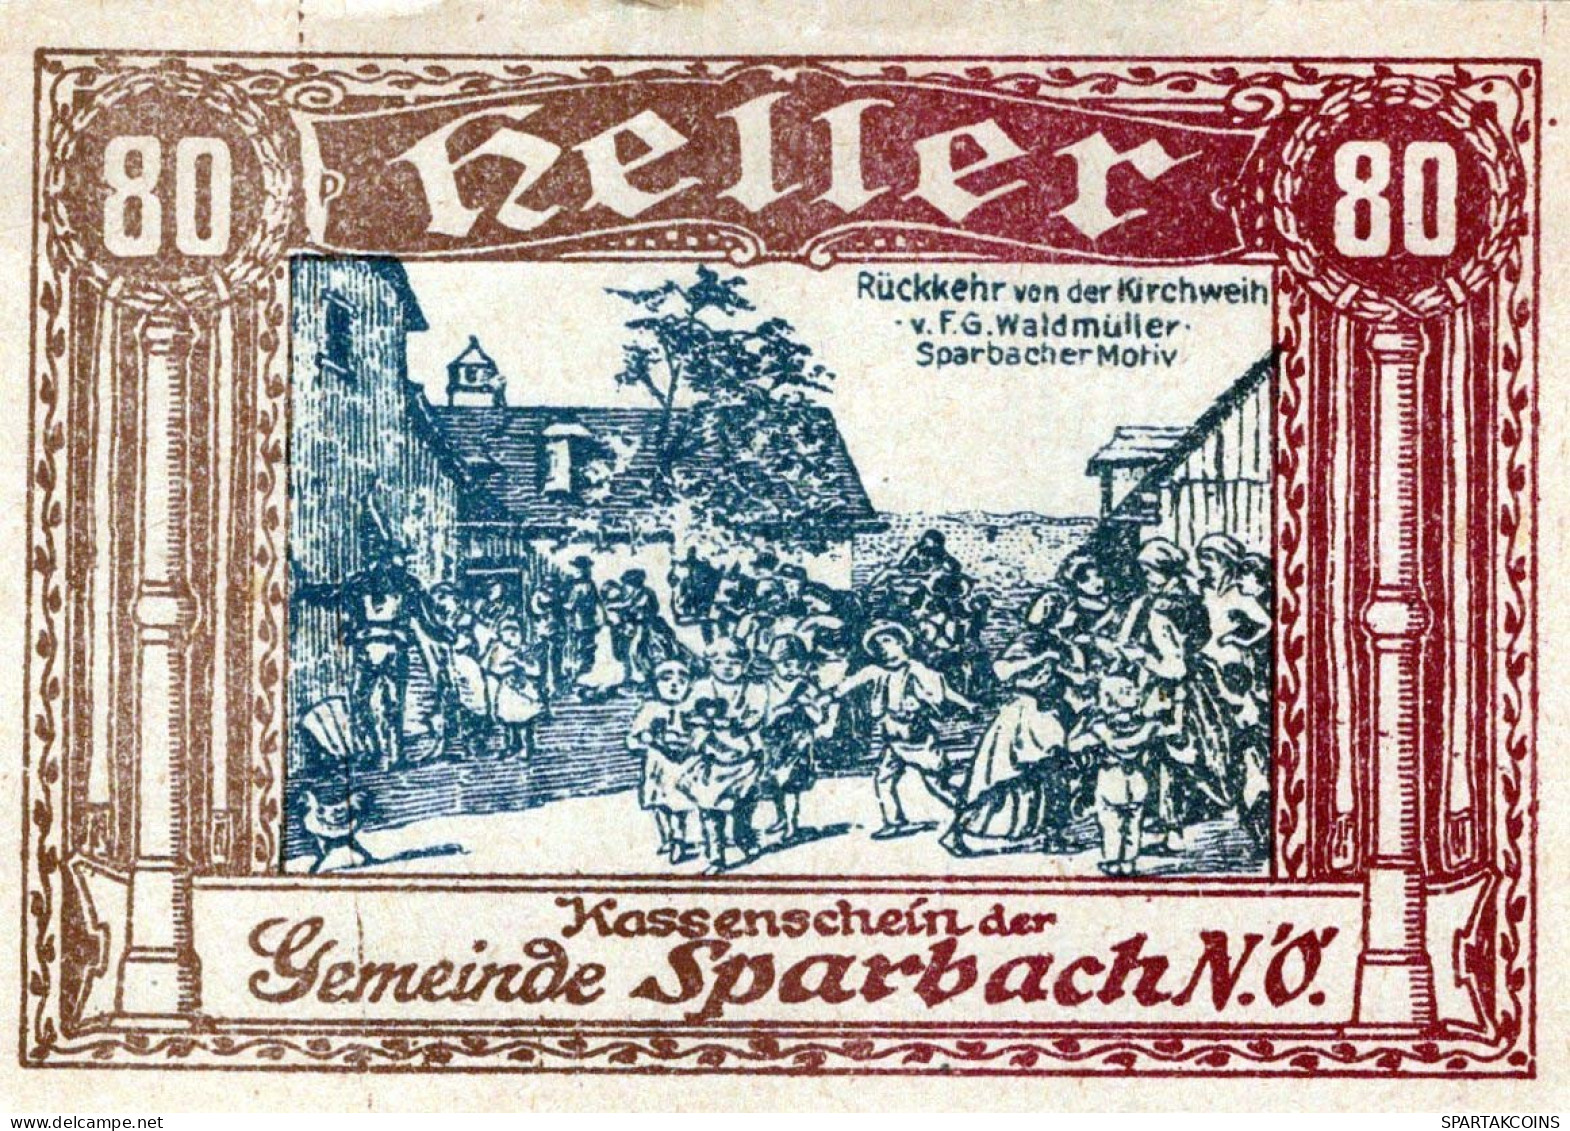 80 HELLER Stadt Sparbach Niedrigeren Österreich Notgeld Papiergeld Banknote #PG996 - [11] Lokale Uitgaven